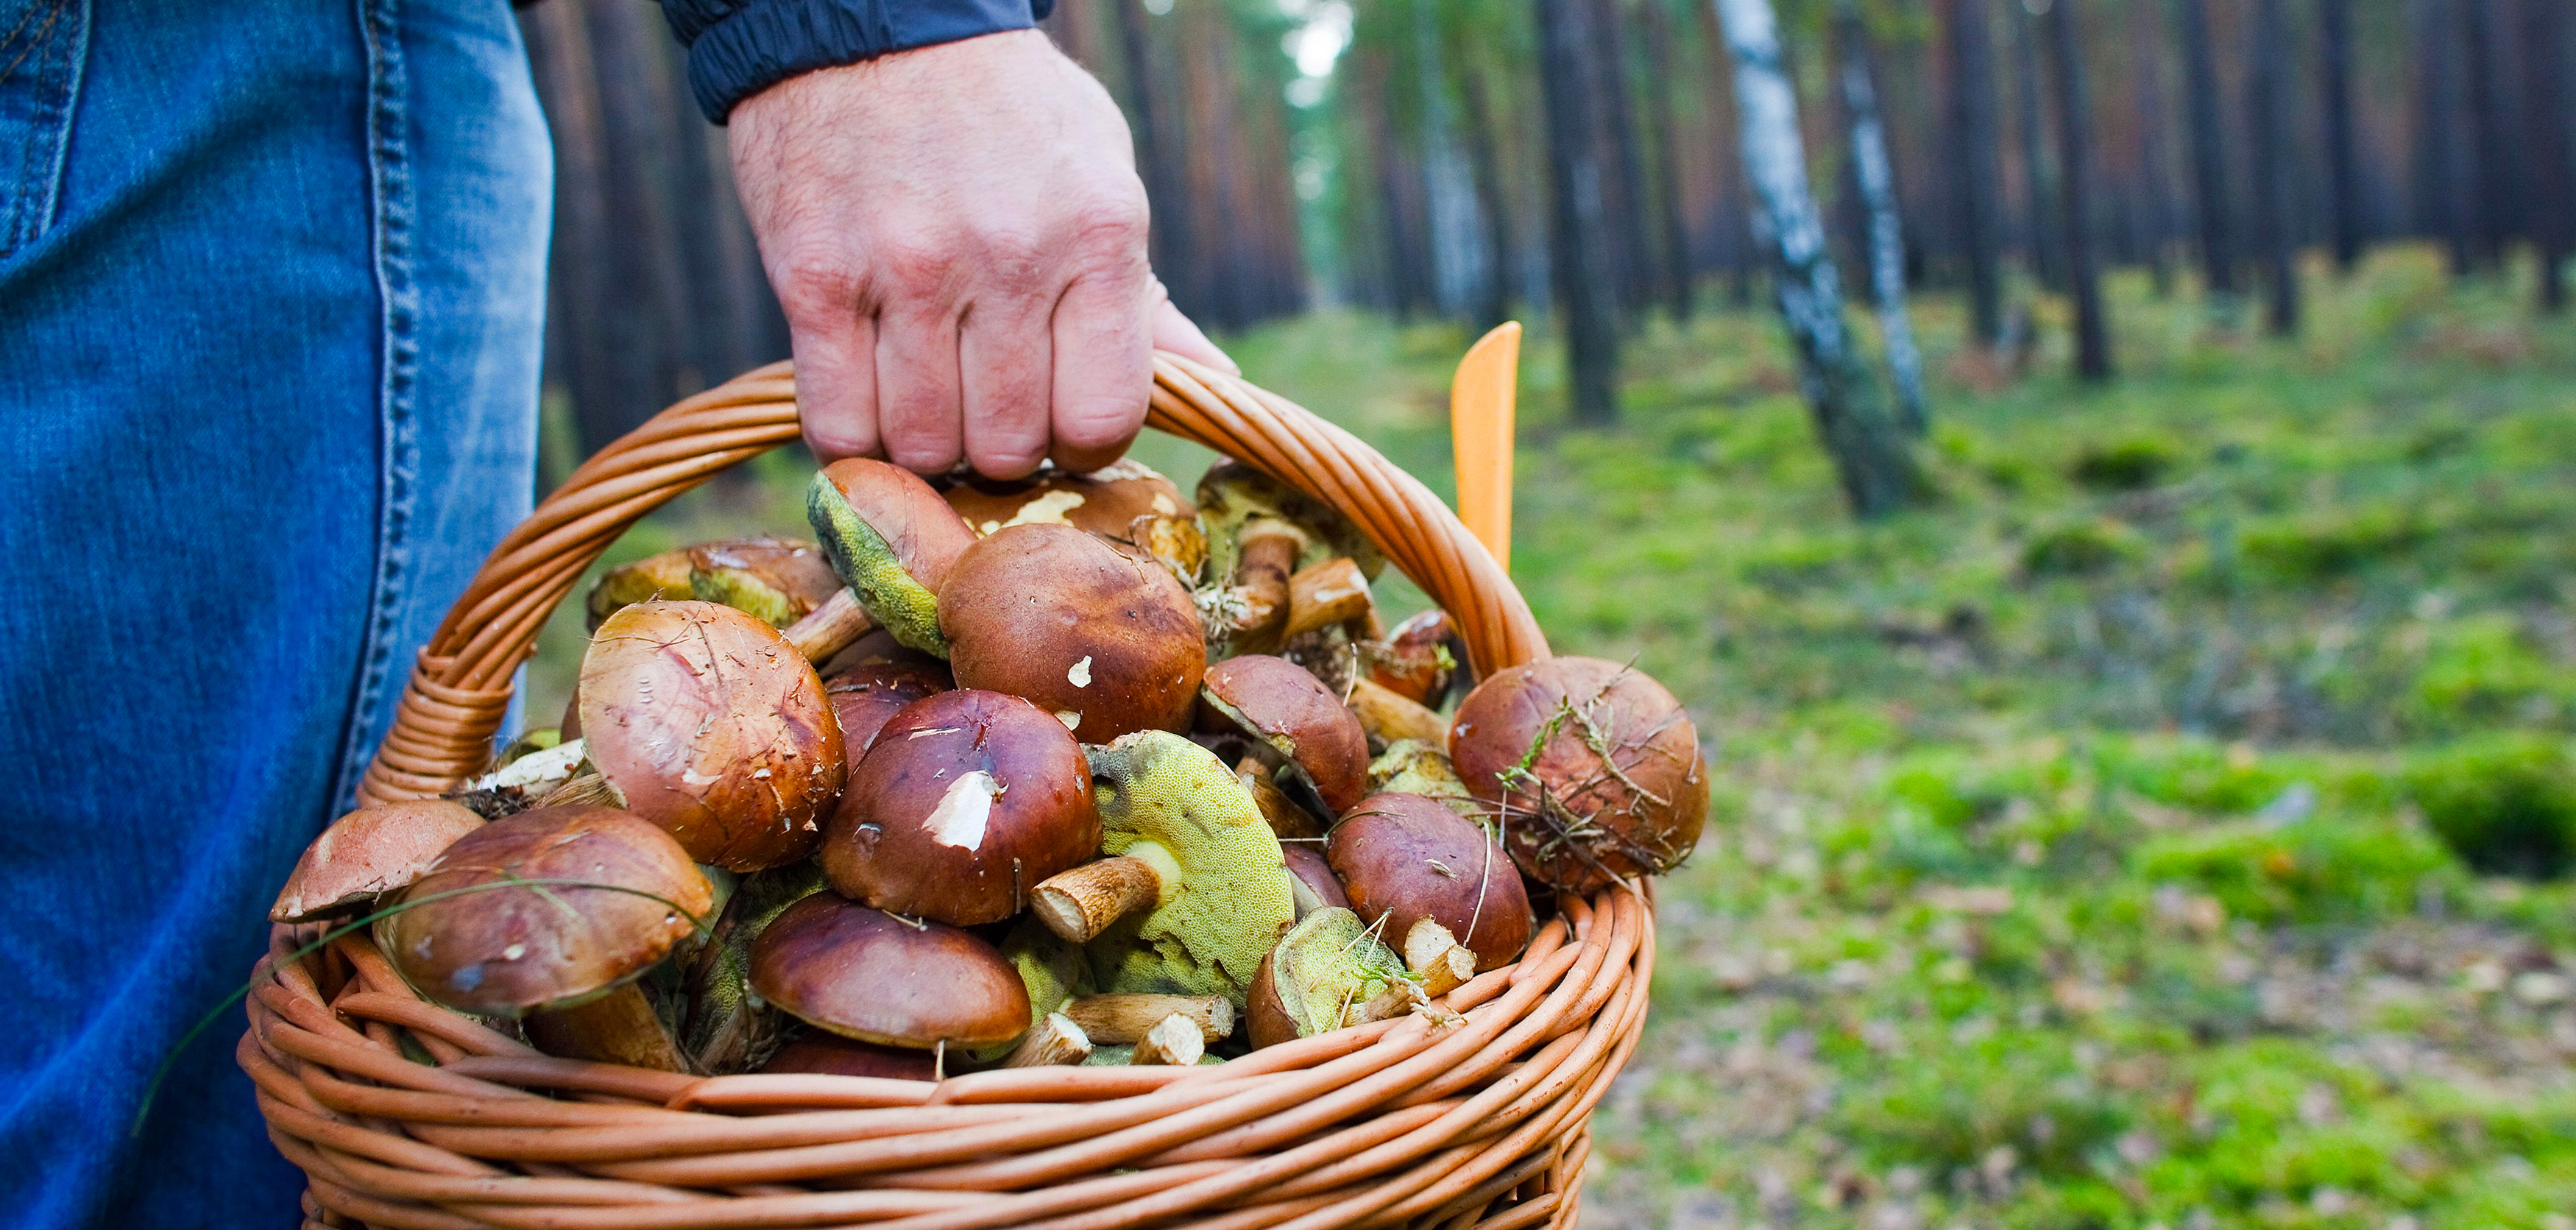 Для урожайной осени: ТОП-10 грибных мест под Одессой - фото